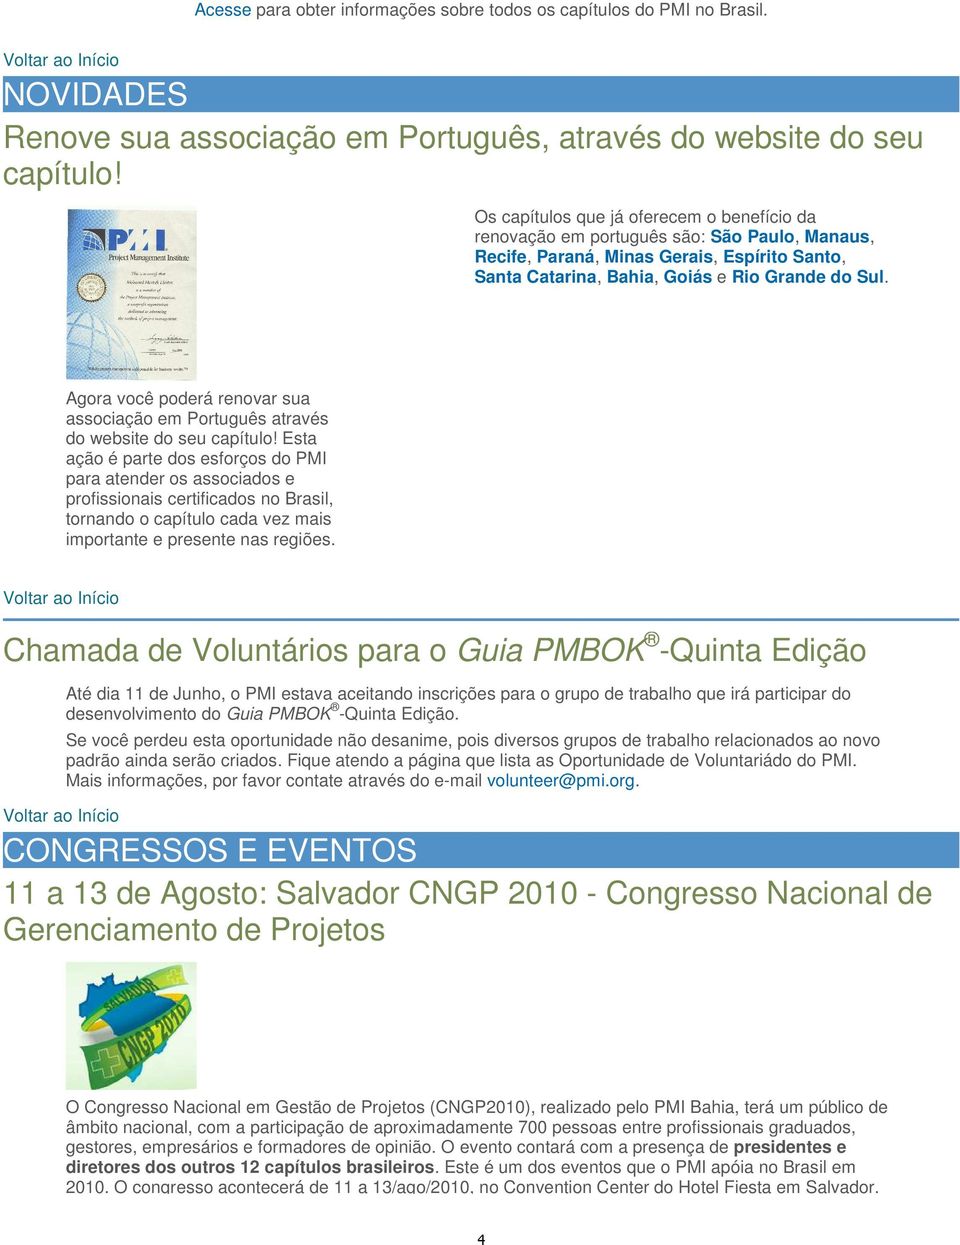 Agora você poderá renovar sua associação em Português através do website do seu capítulo!